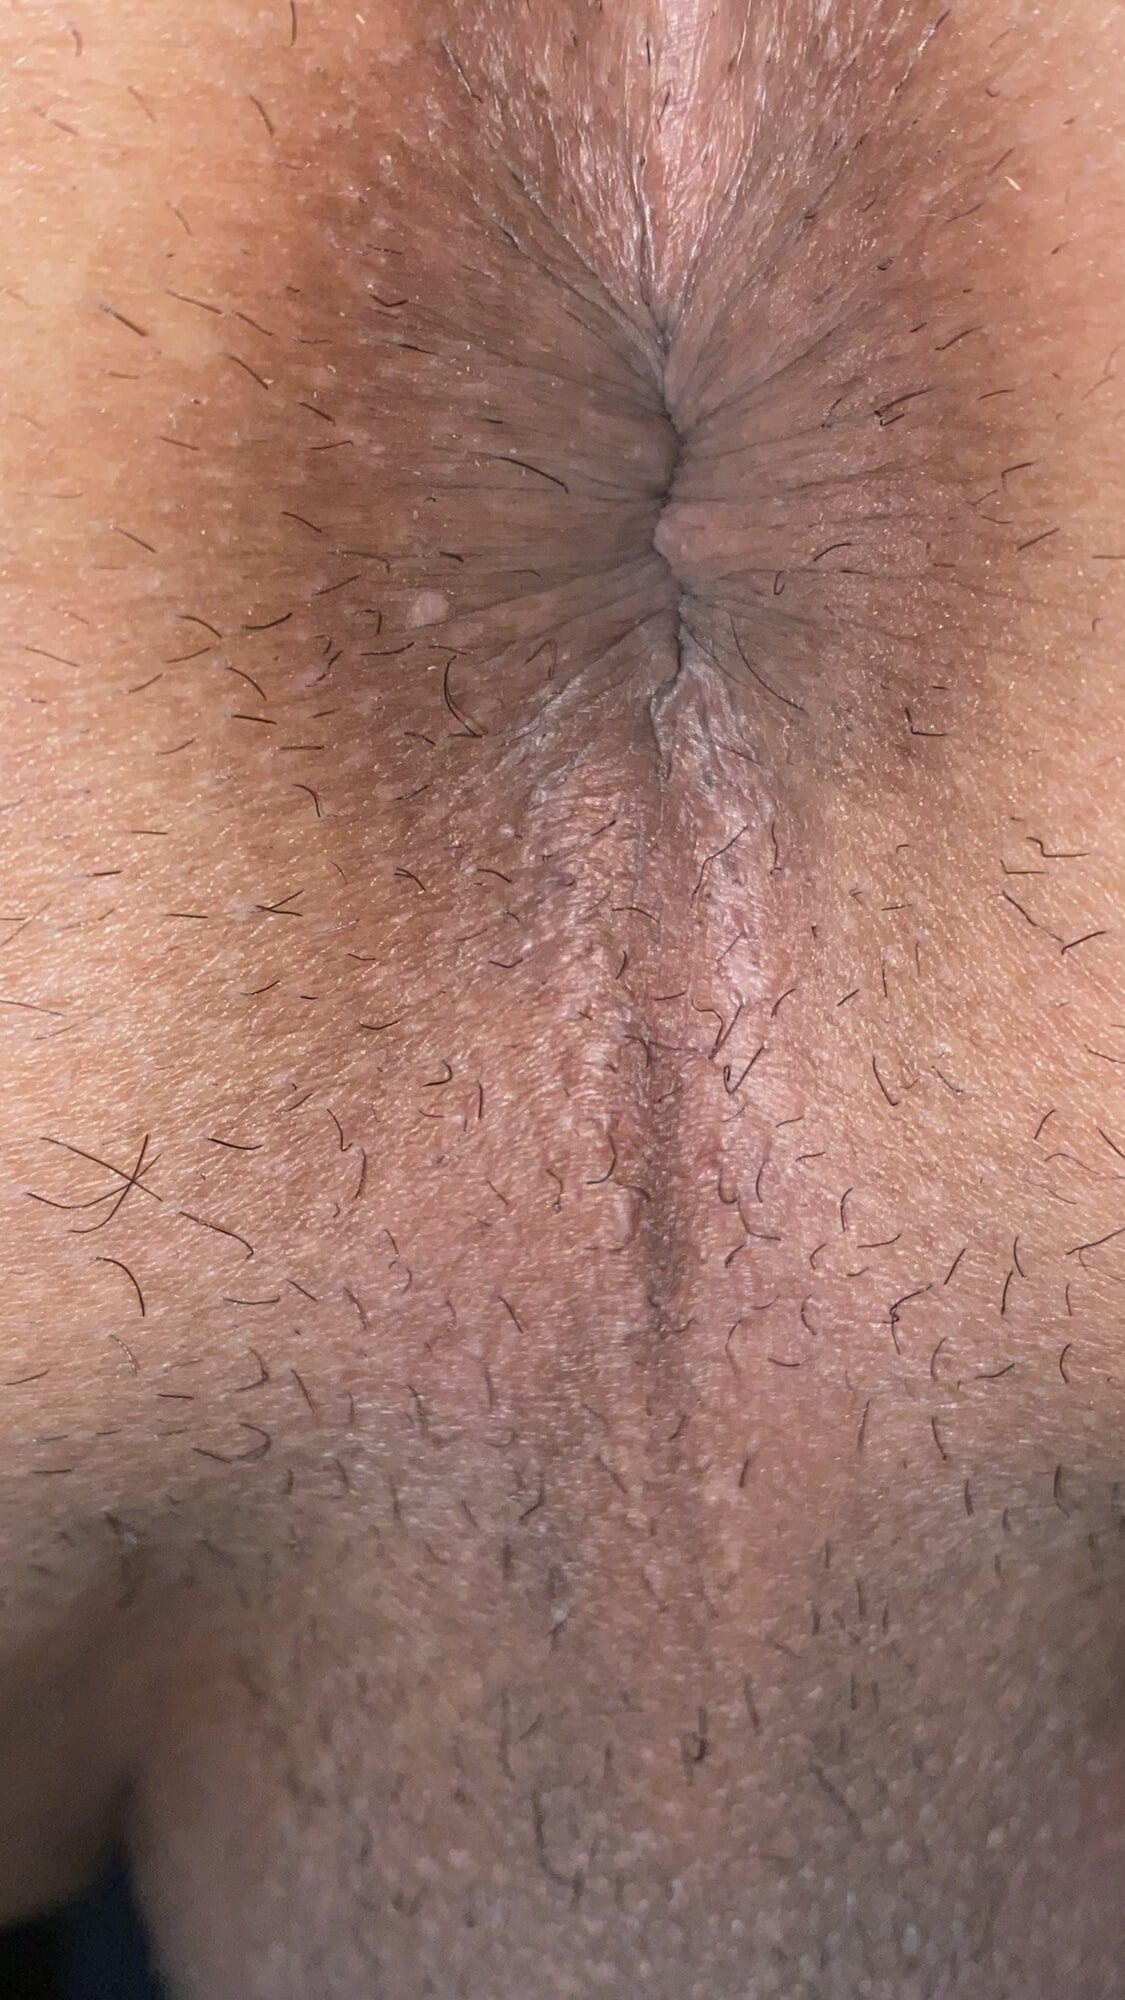 Close-up of a man's anus #22